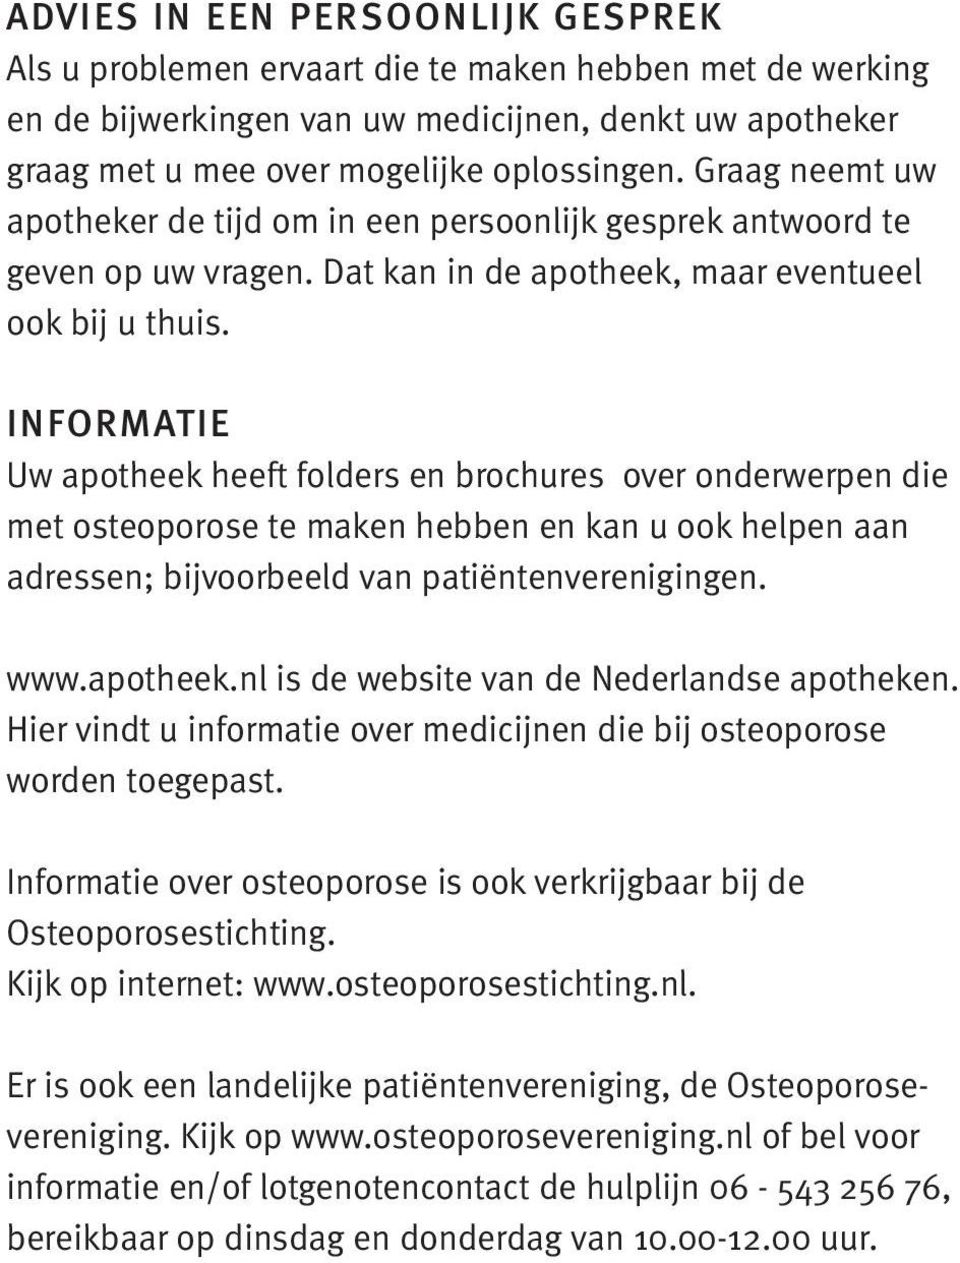 INFORMATIE Uw apotheek heeft folders en brochures over onderwerpen die met osteoporose te maken hebben en kan u ook helpen aan adressen; bijvoorbeeld van patiëntenverenigingen. www.apotheek.nl is de website van de Nederlandse apotheken.